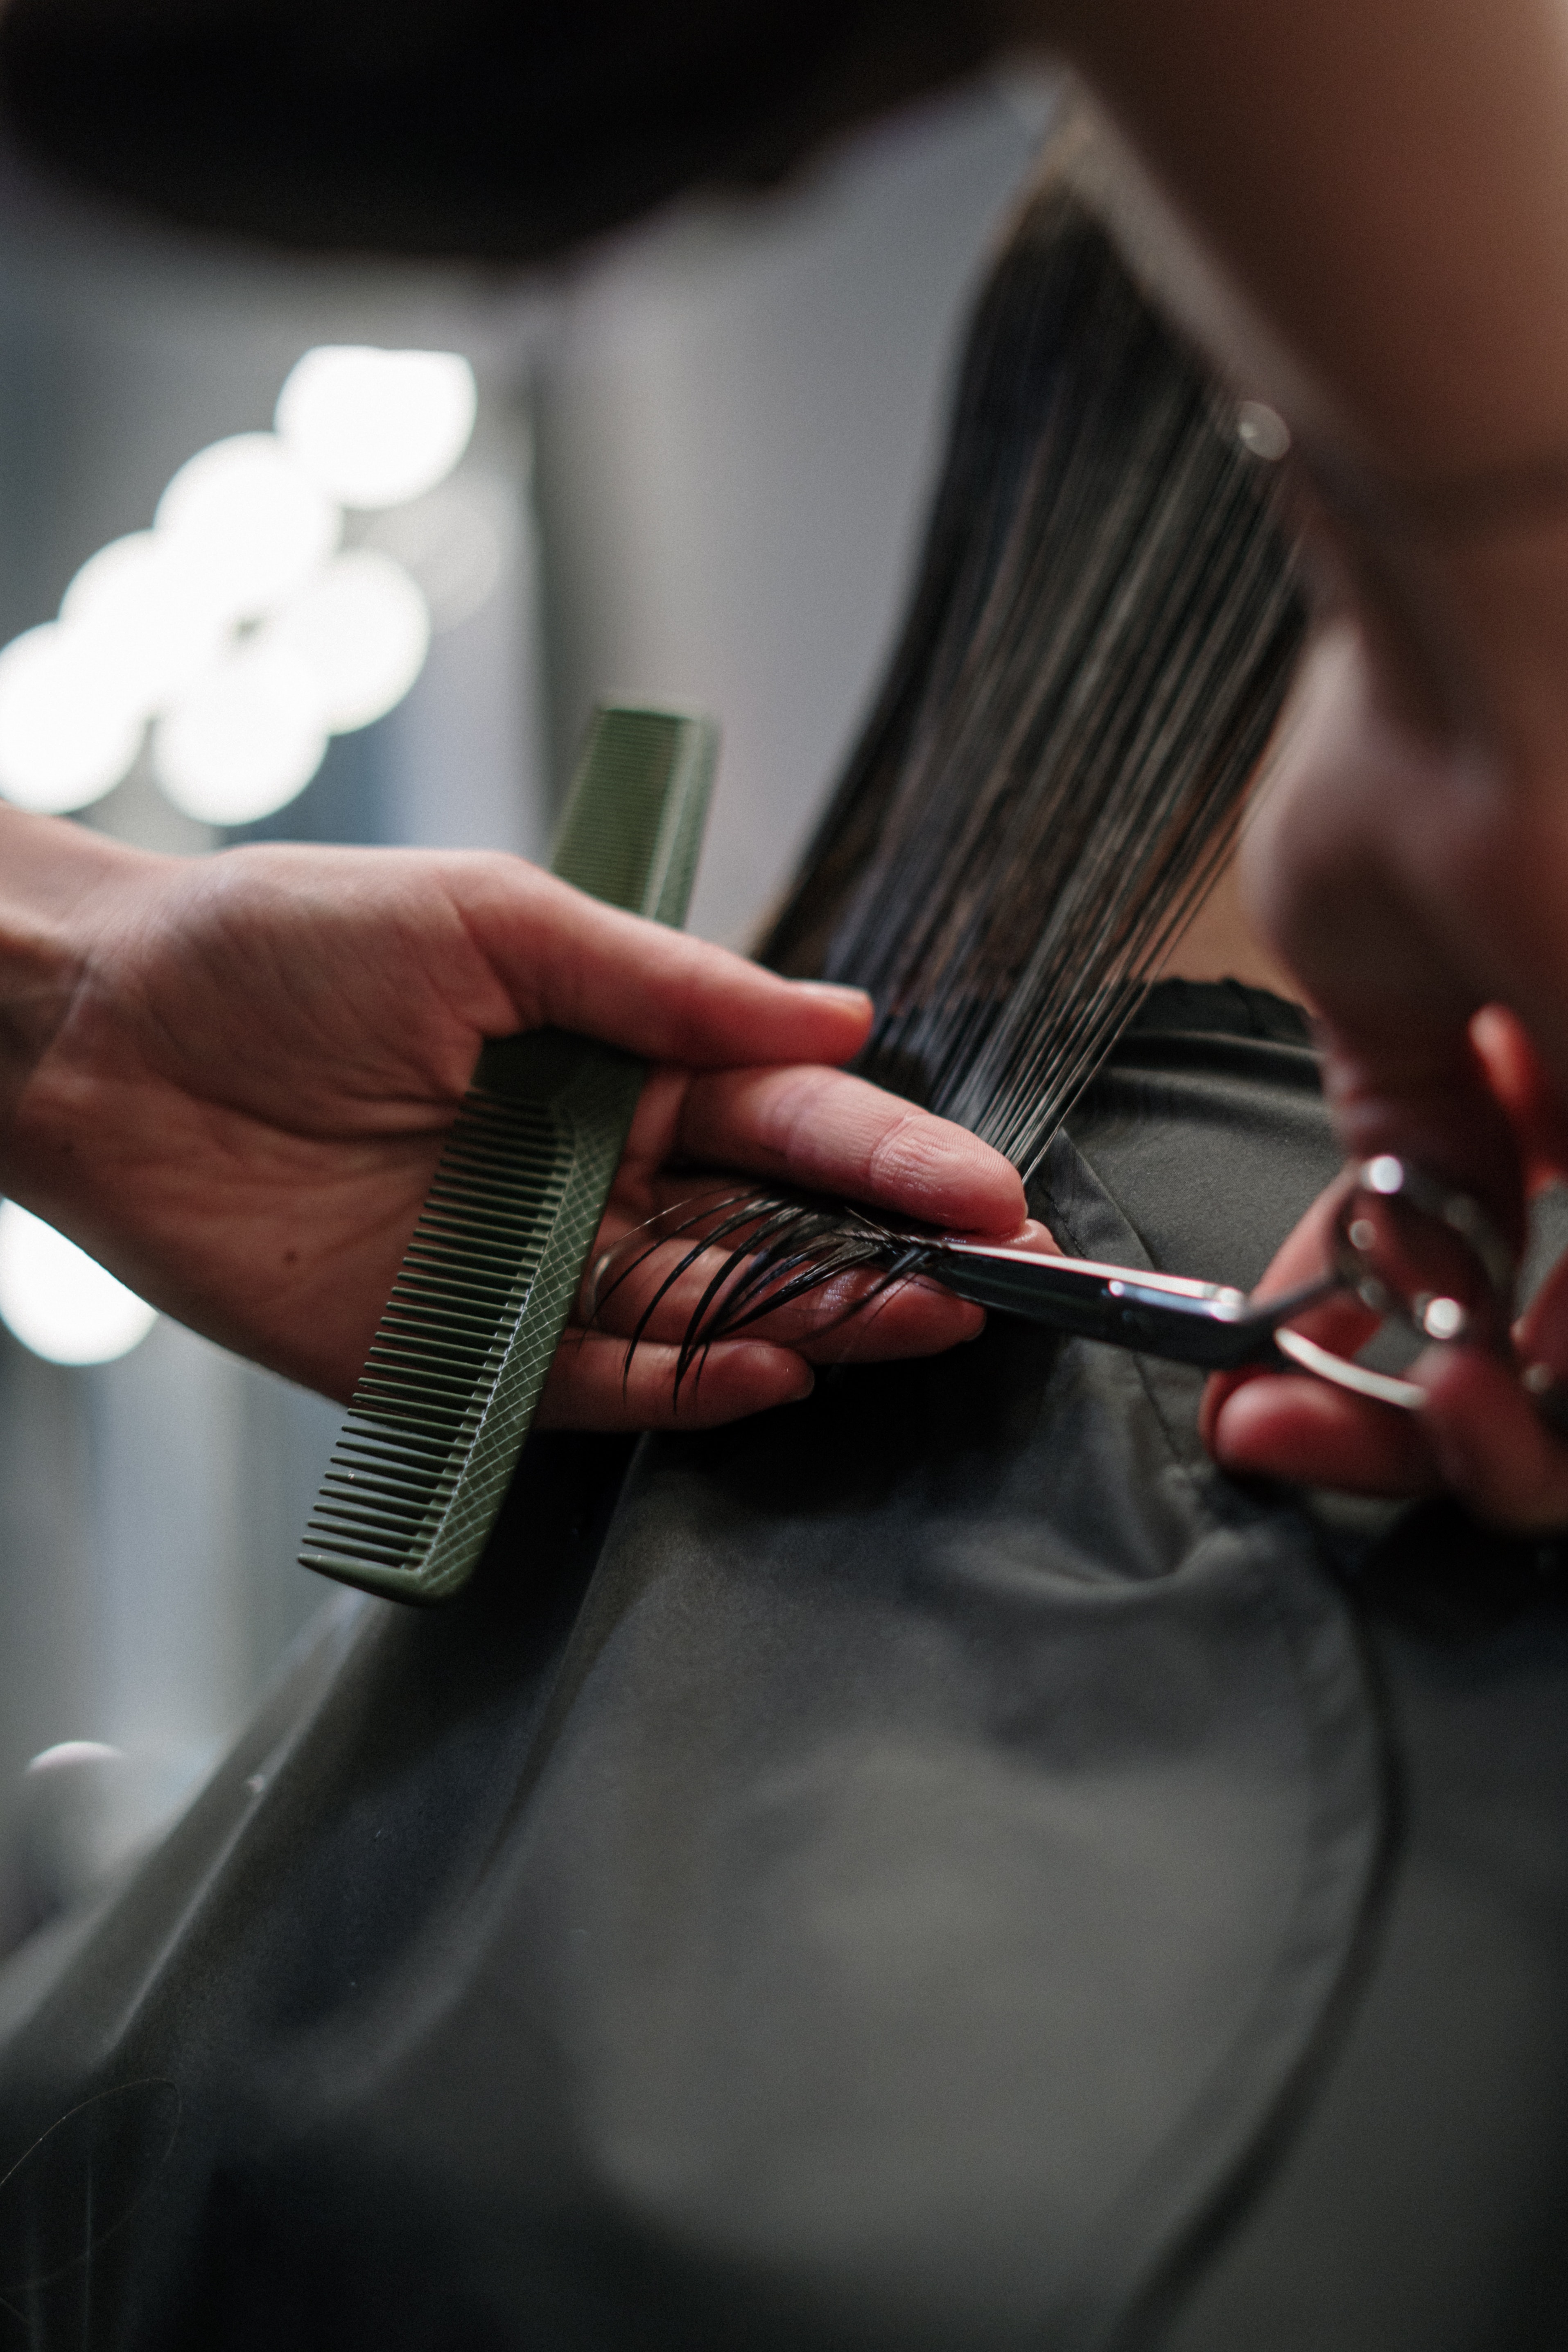 Salon fryzjerski Hairmate – precyzja, doskonała jakość usług i Twoje zadowolenie